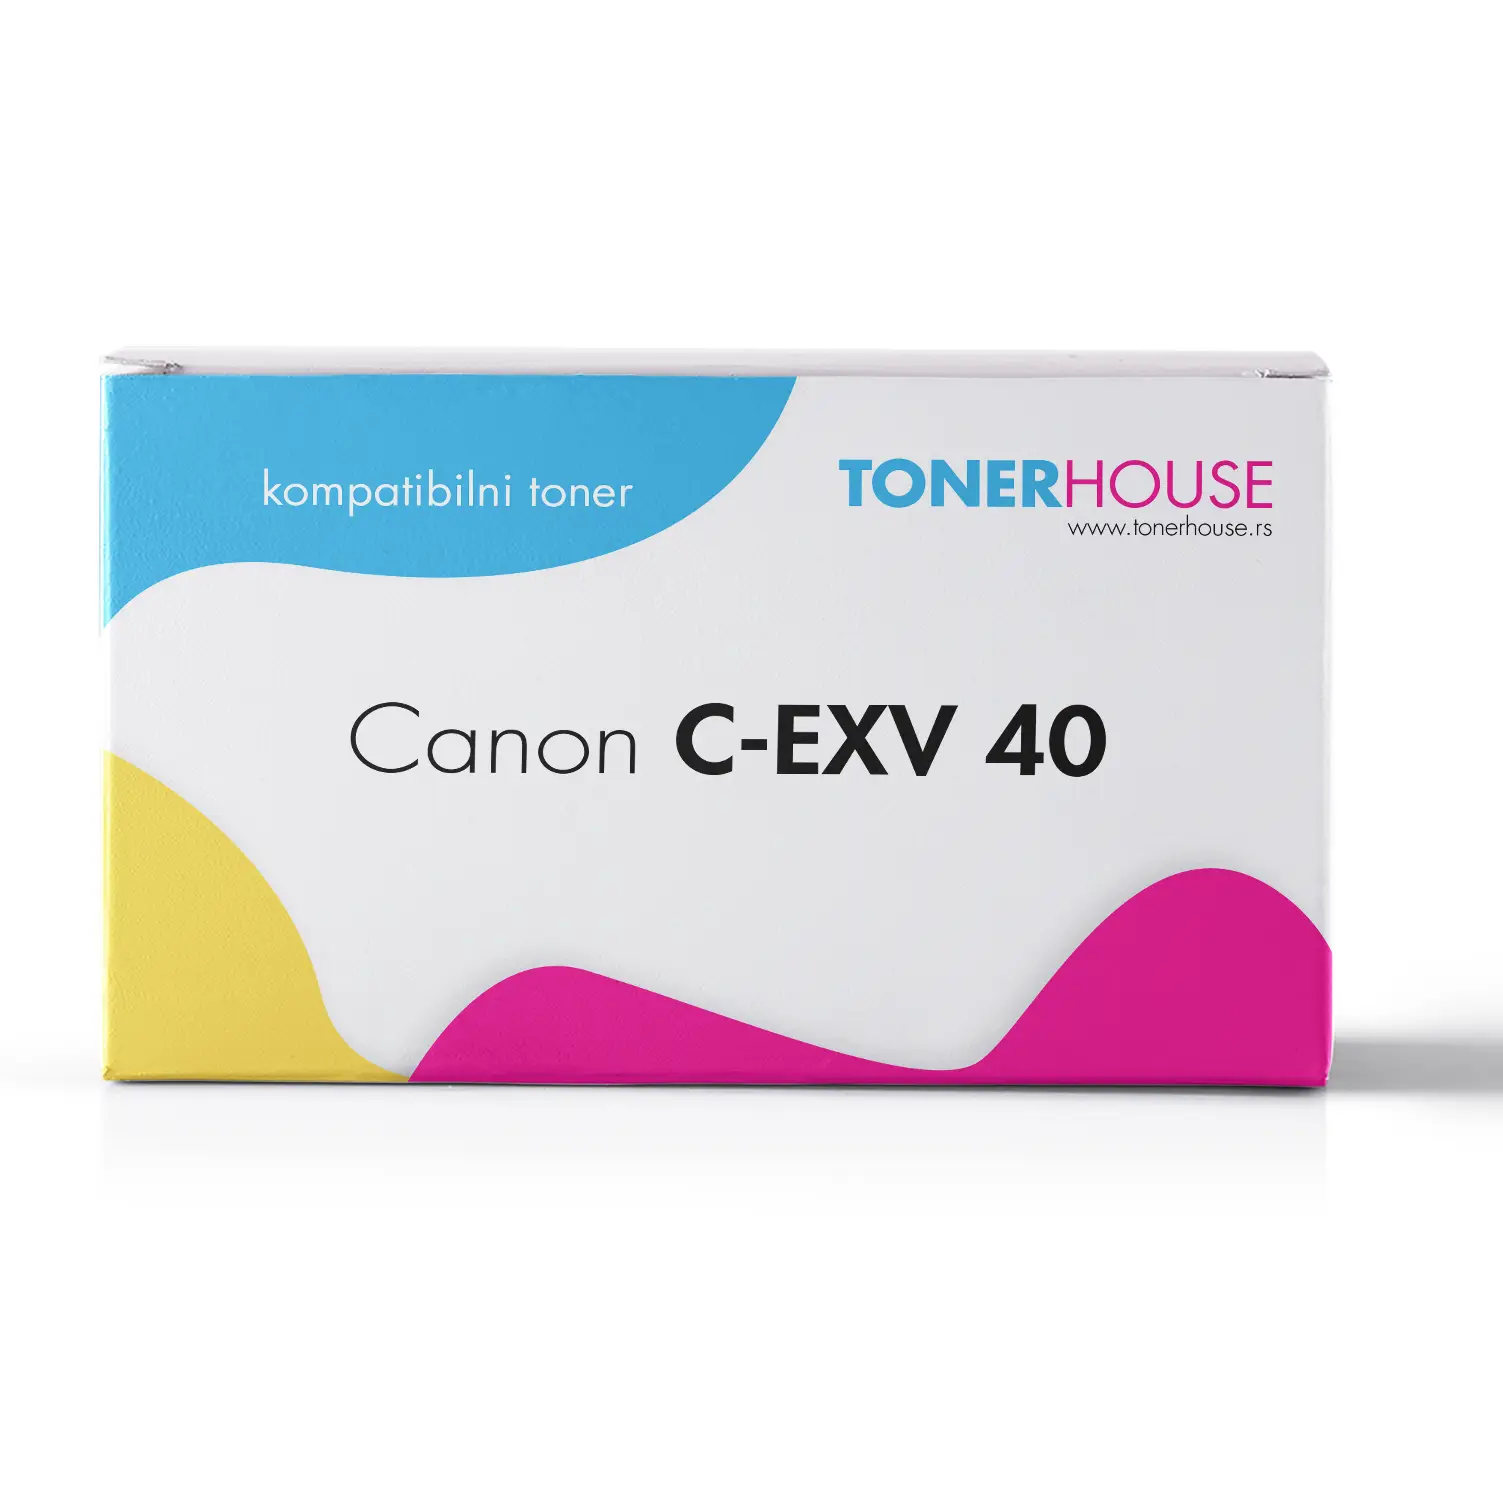 Canon C-EXV 40 Toner Kompatibilni